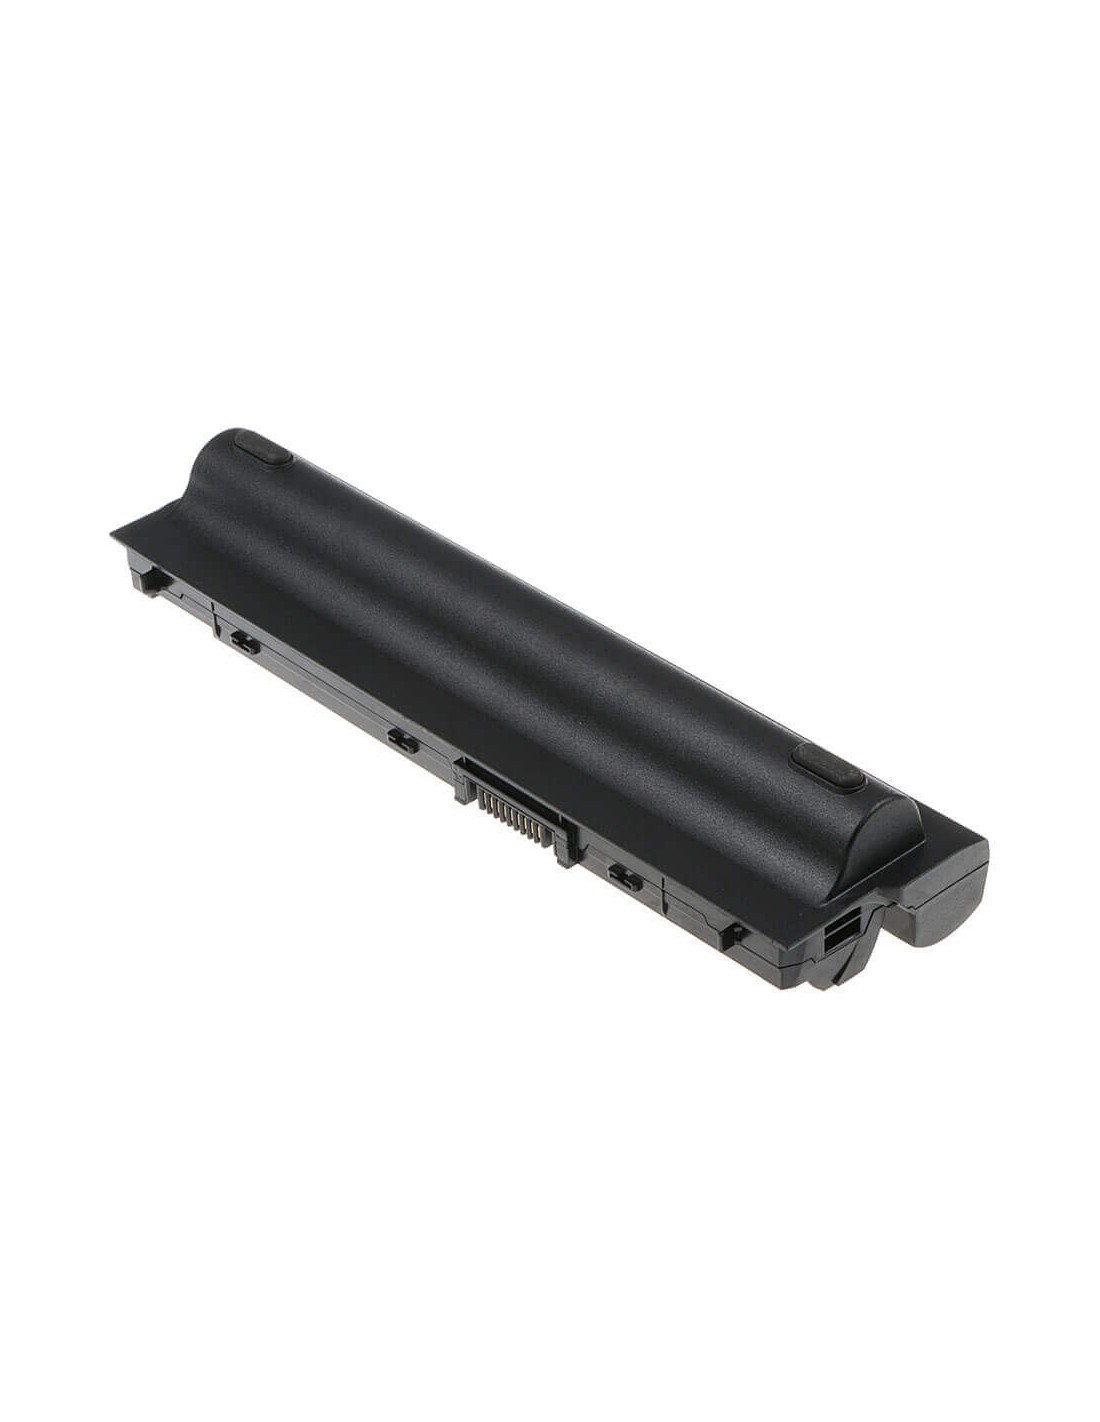 Black Battery for Dell Latitude E6120, Latitude E6220, Latitude E6230 11.1V, 6600mAh - 73.26Wh